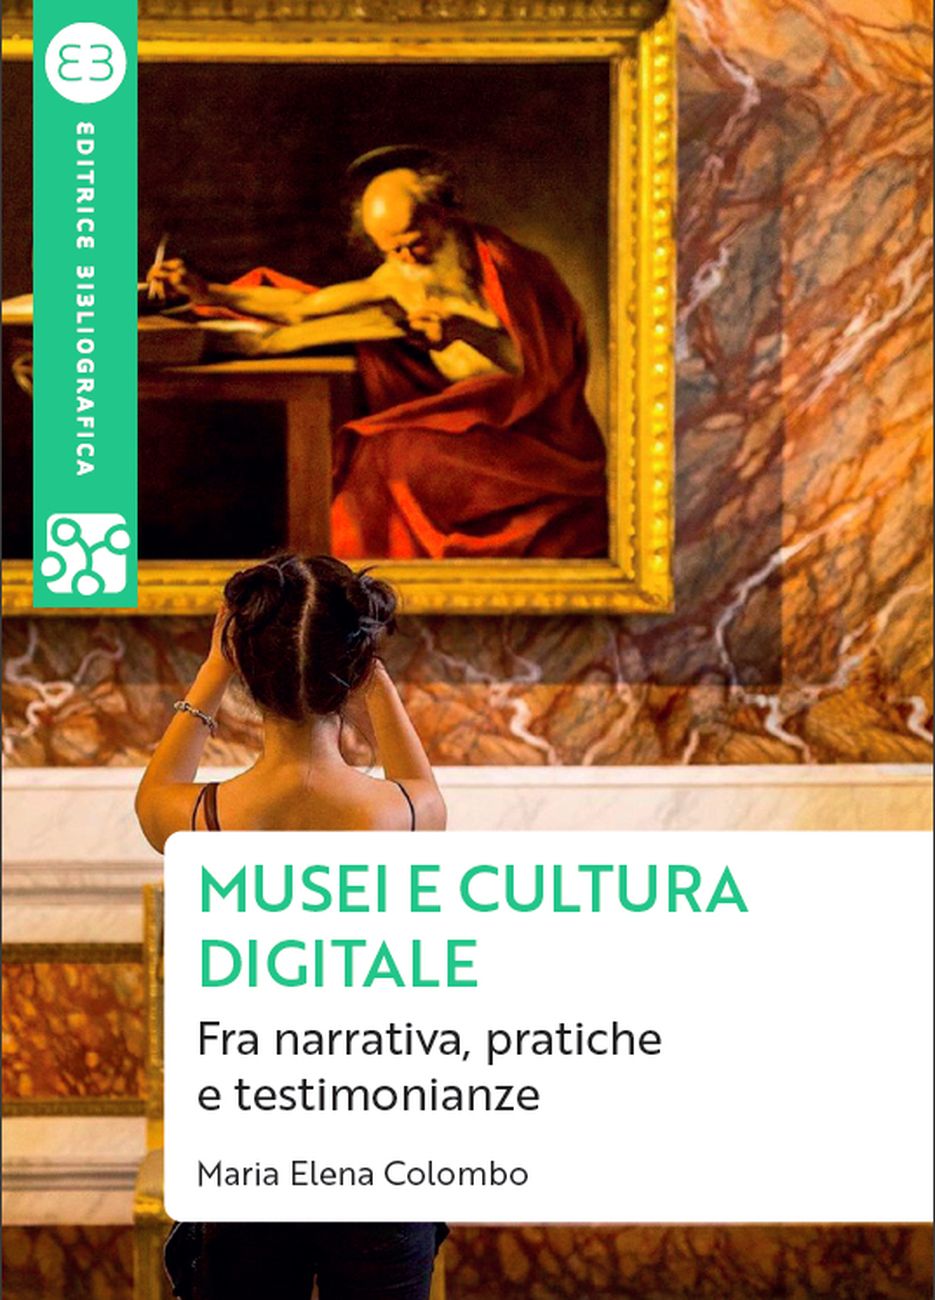 Maria Elena Colombo – Musei e cultura digitale (Editrice Bibliografica, Milano 2020)